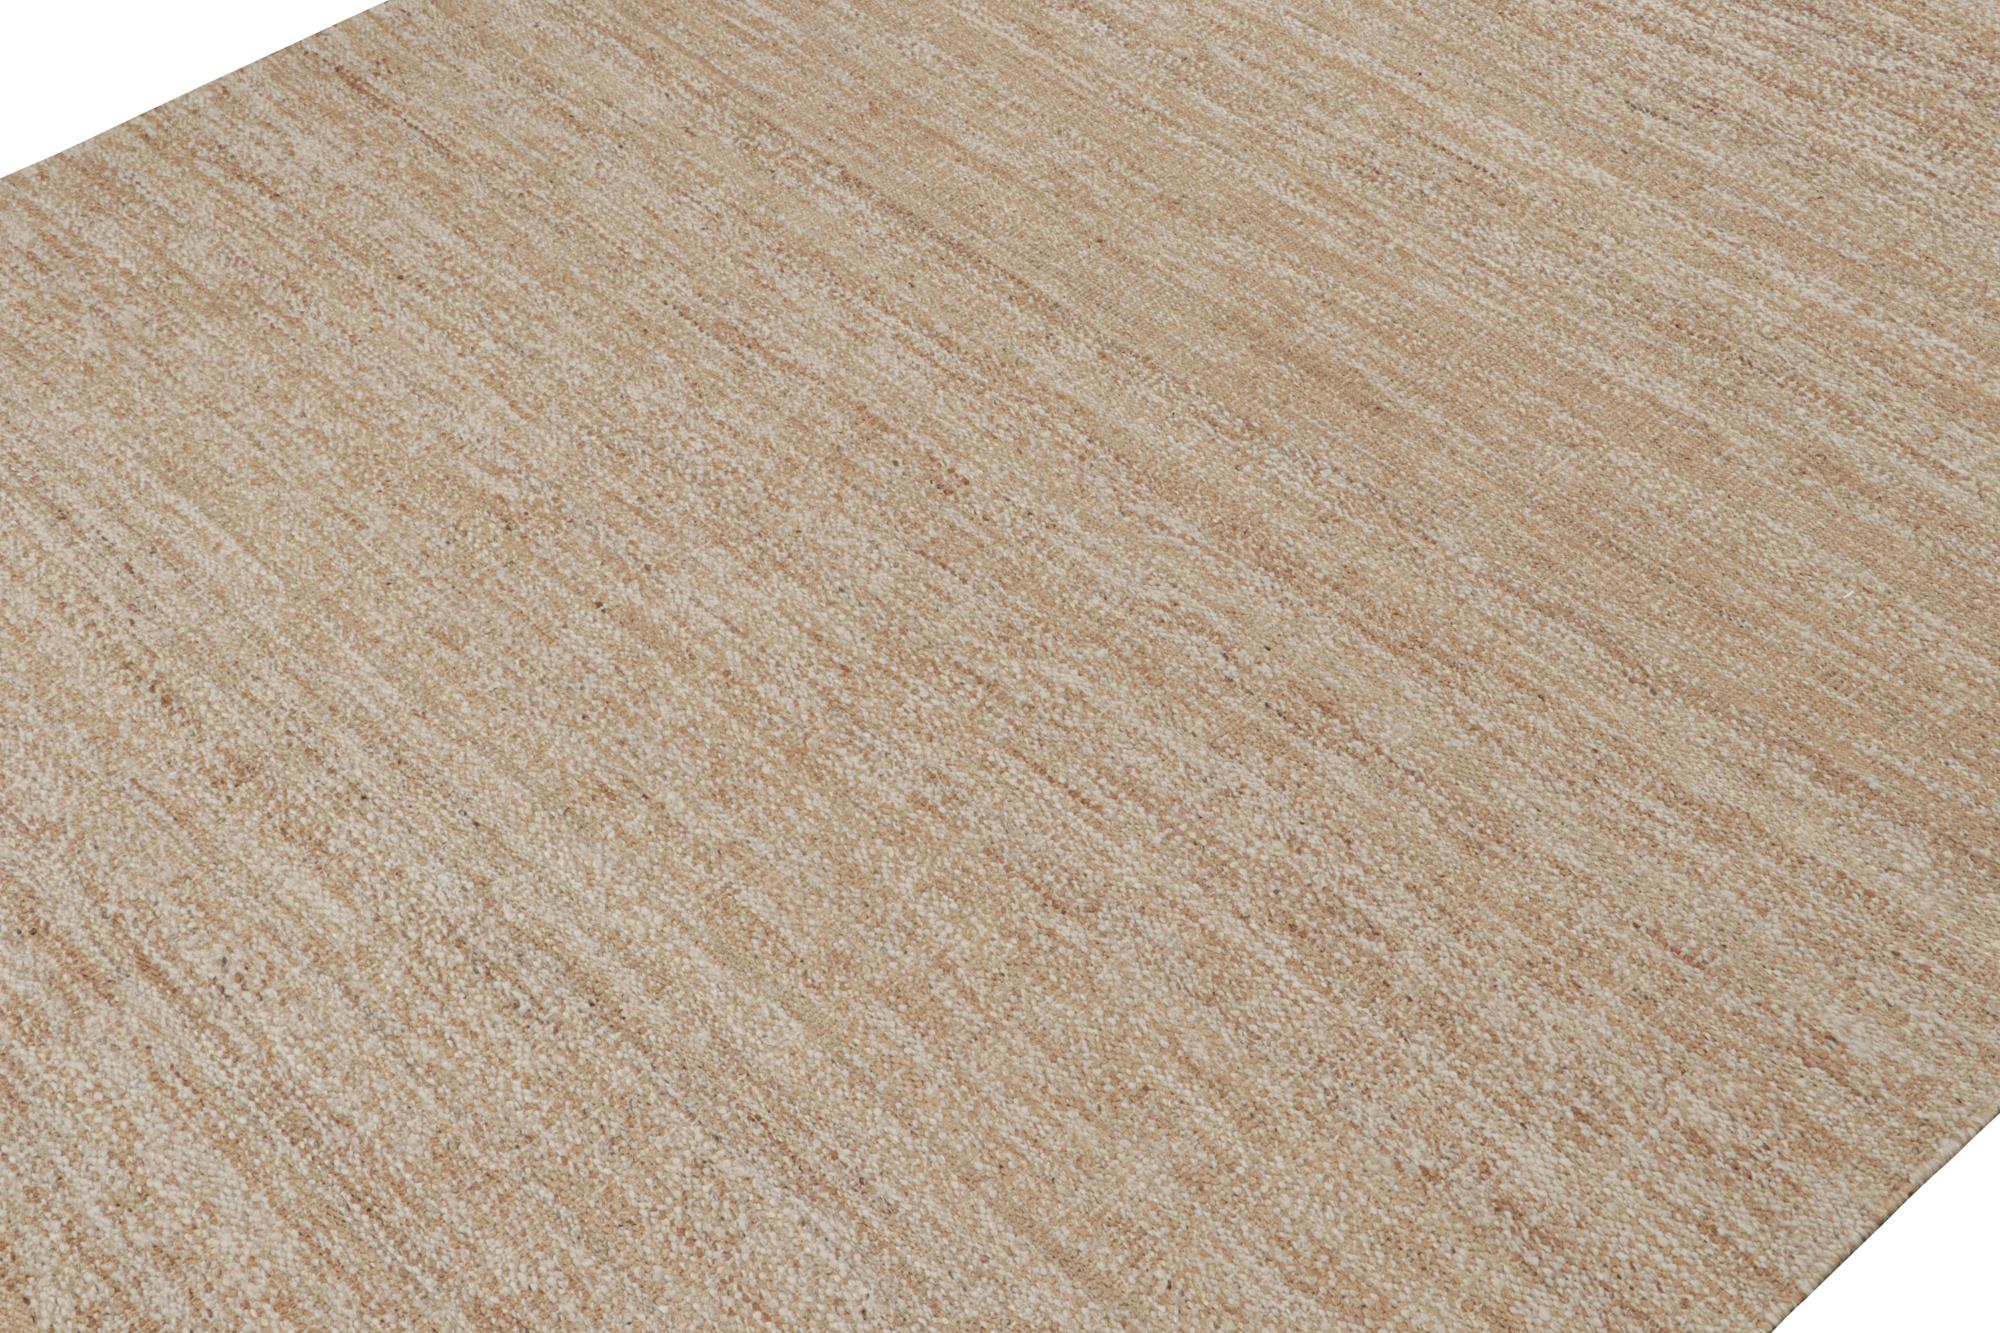 Ce tissage plat 10x14 au design contemporain fait partie de la toute nouvelle collection de Rug & Kilim - entièrement tissée à la main en jute.

Sur le Design : 

Le tapis Rug & Kilim présente une texture bouclée de bon goût et un sens du mouvement